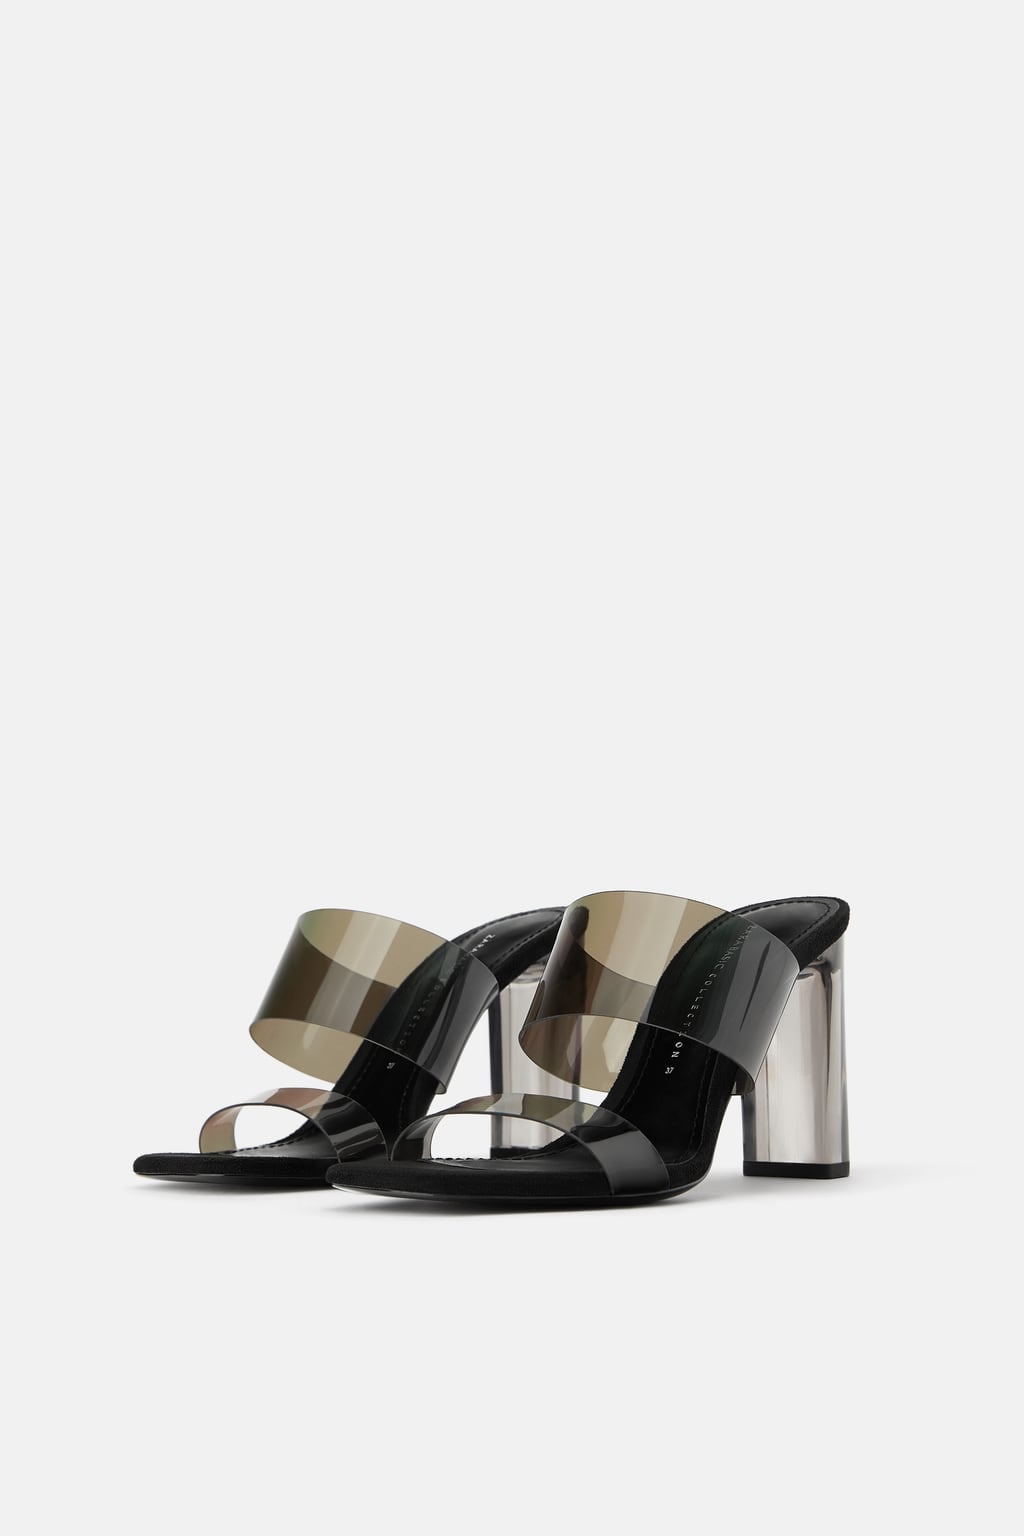 Zara Heeled Vinyl Sandals With Buckles - Deeswoman